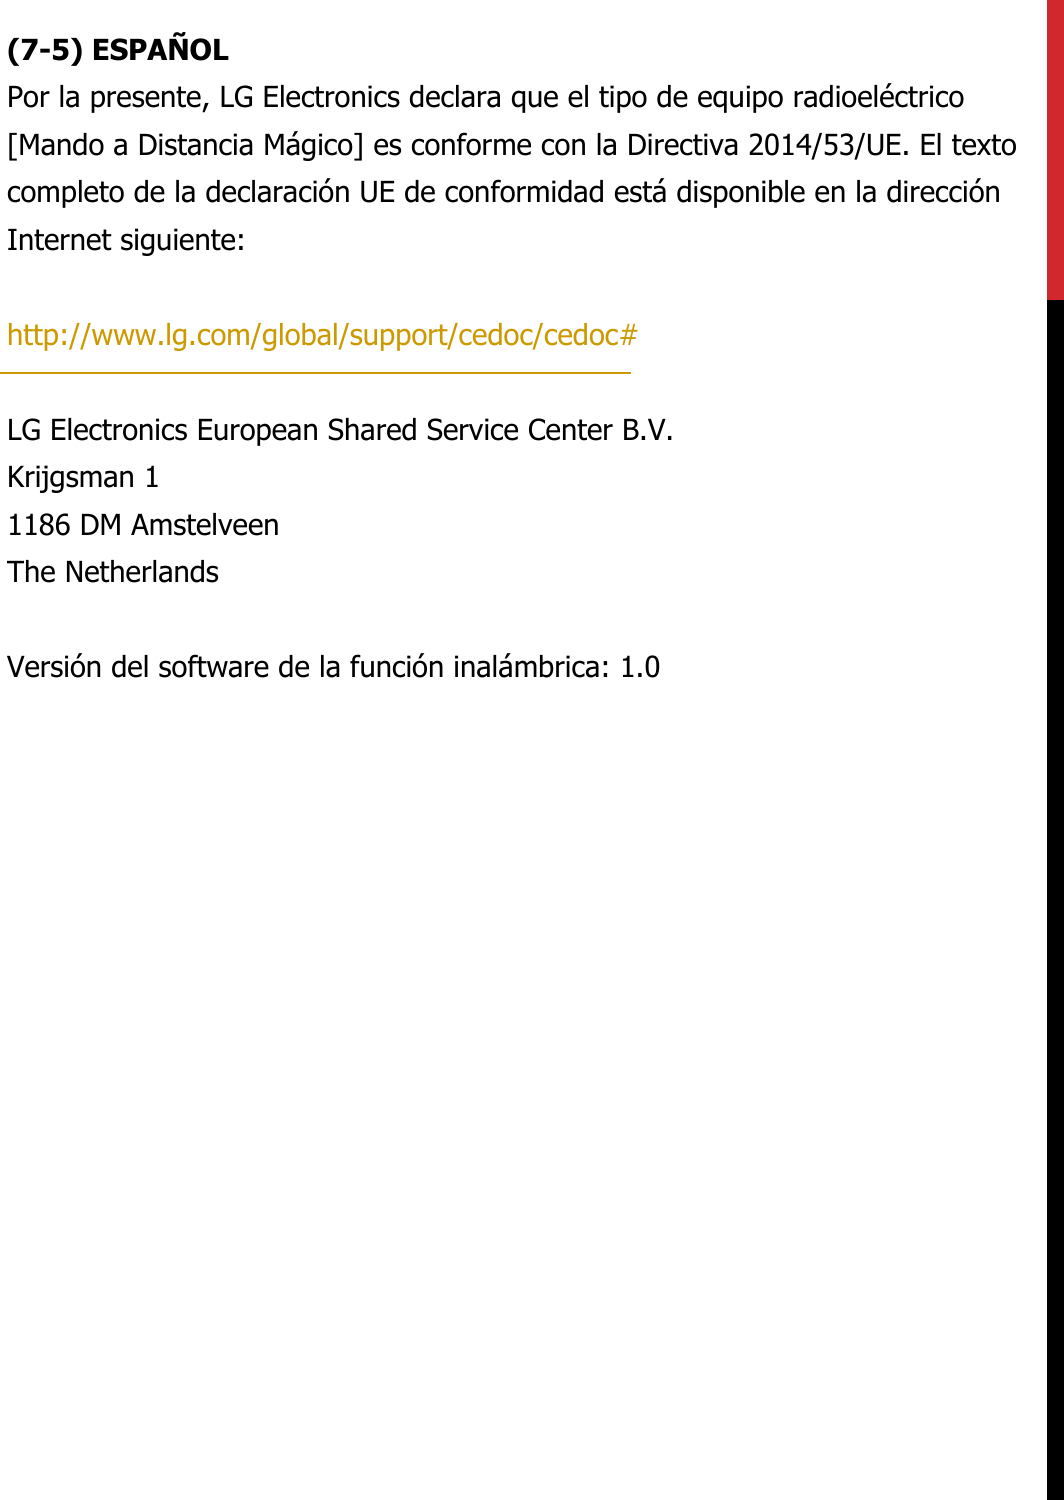 (7-5) ESPAÑOLPor la presente, LG Electronics declara que el tipo de equipo radioeléctrico [Mando a Distancia Mágico] es conforme con la Directiva 2014/53/UE. El texto completo de la declaración UE de conformidad está disponible en la dirección Internet siguiente:   http://www.lg.com/global/support/cedoc/cedoc#   LG Electronics European Shared Service Center B.V.  Krijgsman 1  1186 DM Amstelveen  The Netherlands   Versión del software de la función inalámbrica: 1.0